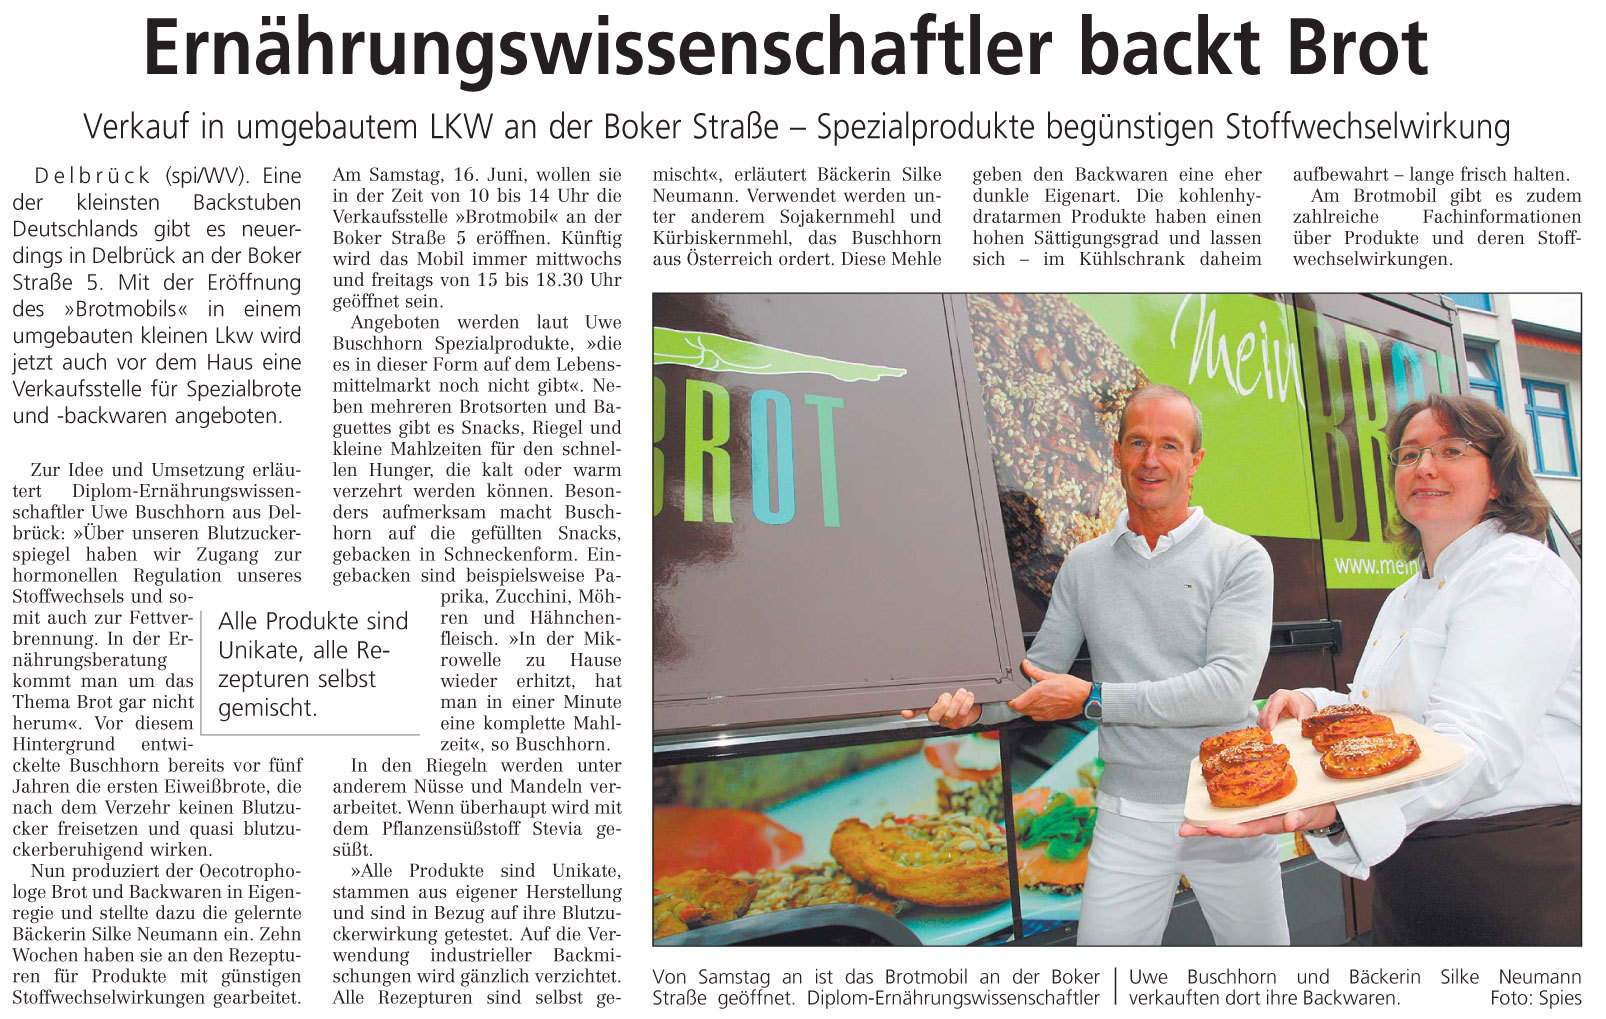 Bericht des Westfälisches Volksblatt vom 15.06.2012 über Mein-Brot.info Uwe Buchhorn